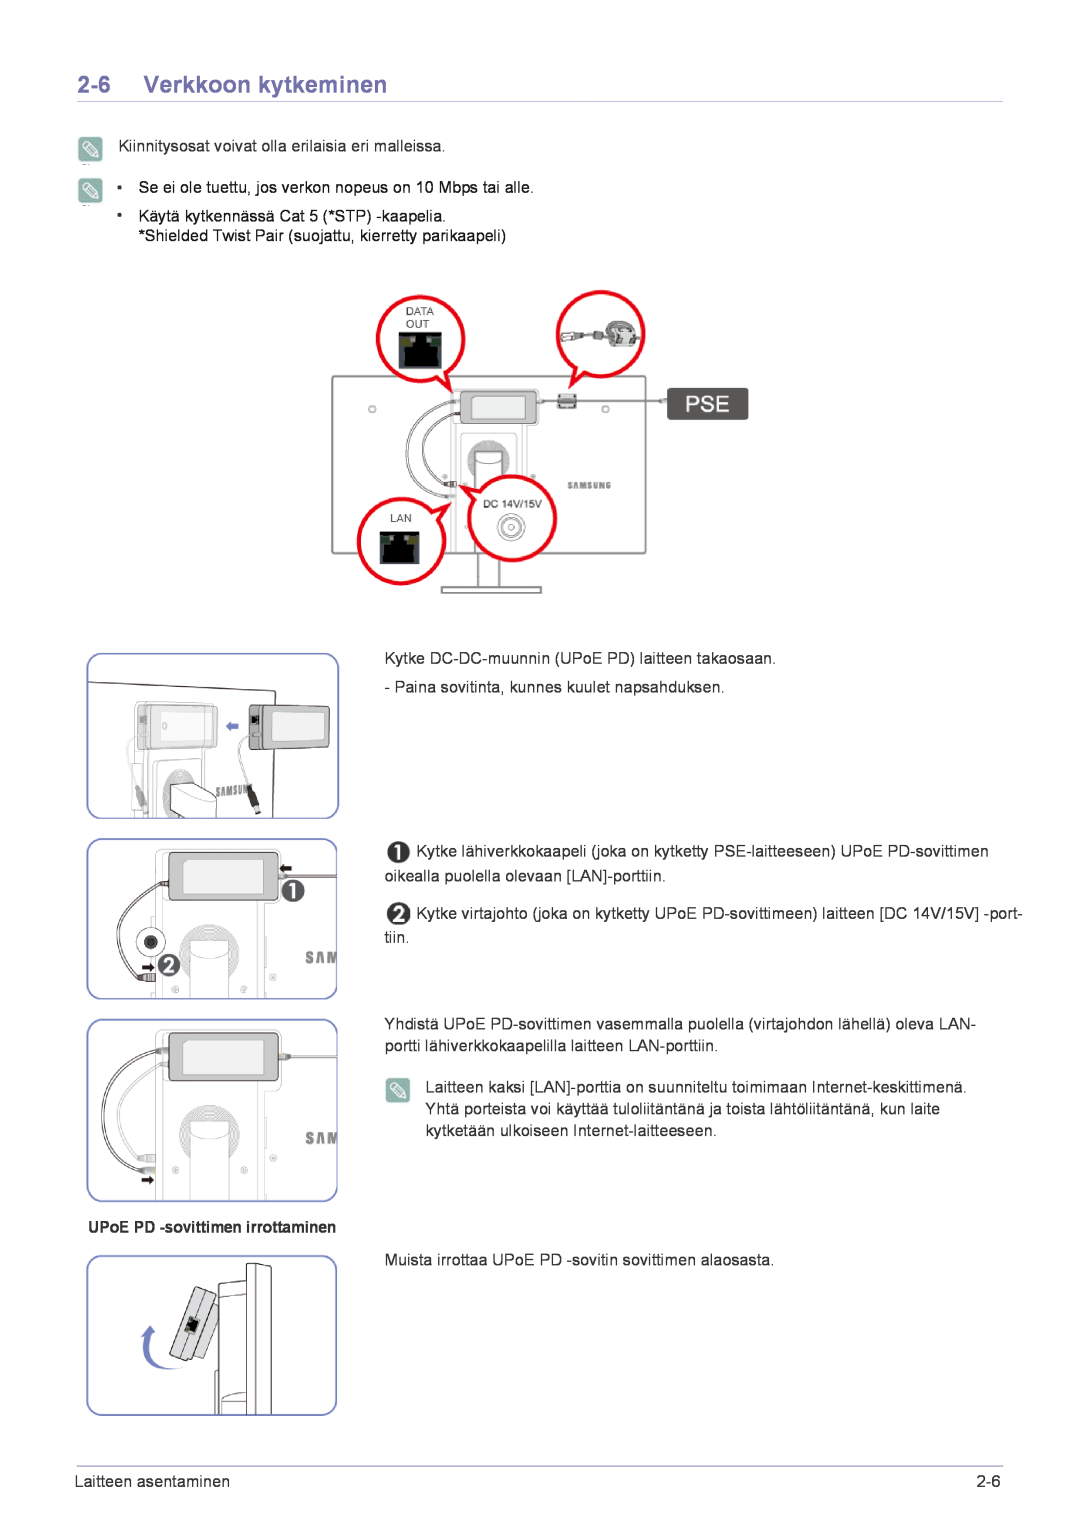 Samsung LF22NPBHBNP/EN manual Verkkoon kytkeminen, UPoE PD -sovittimen irrottaminen 